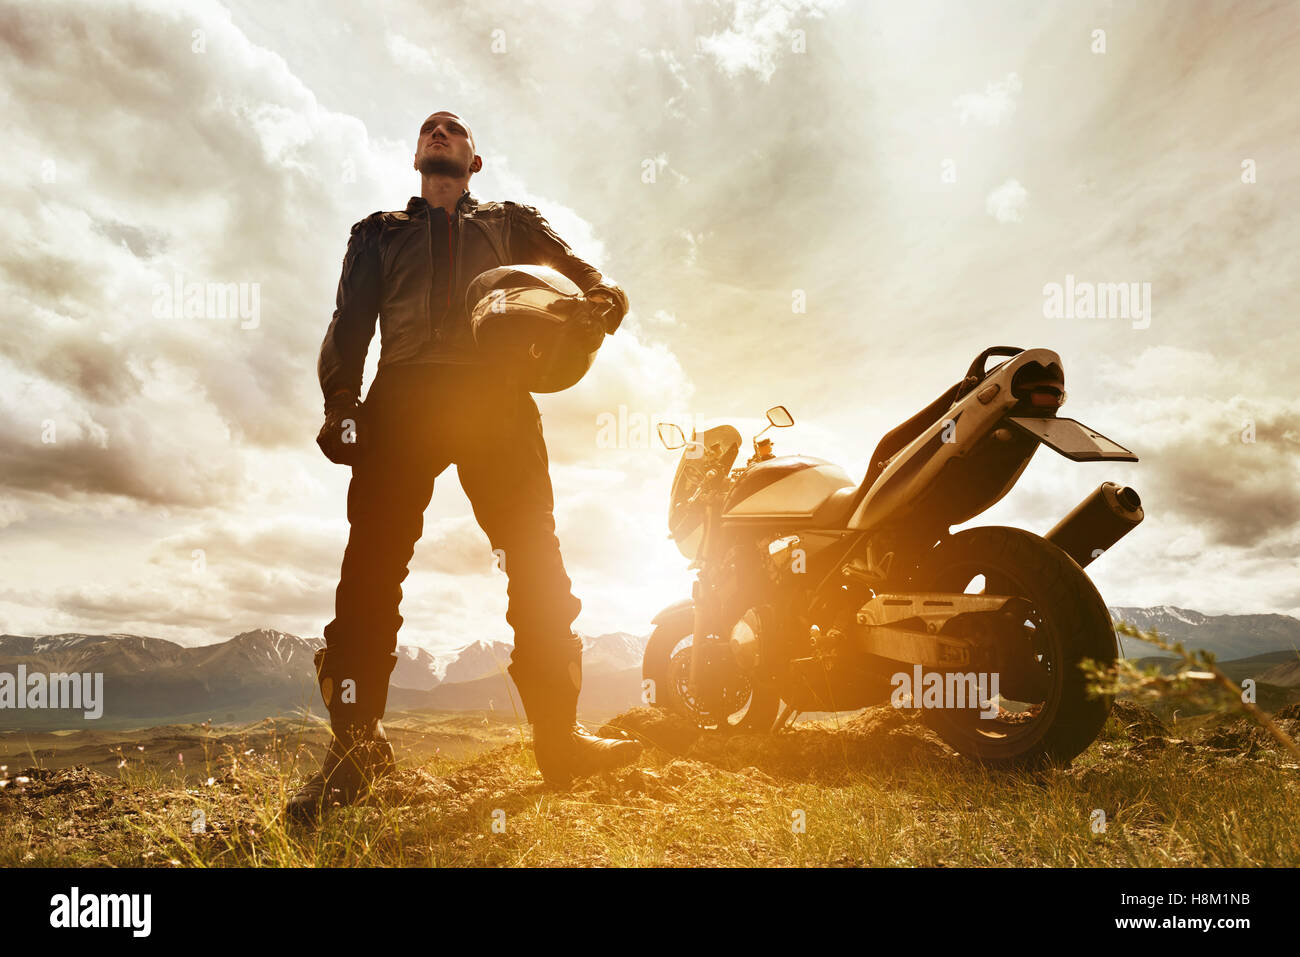 Biker moto sur toile avec des montagnes Banque D'Images